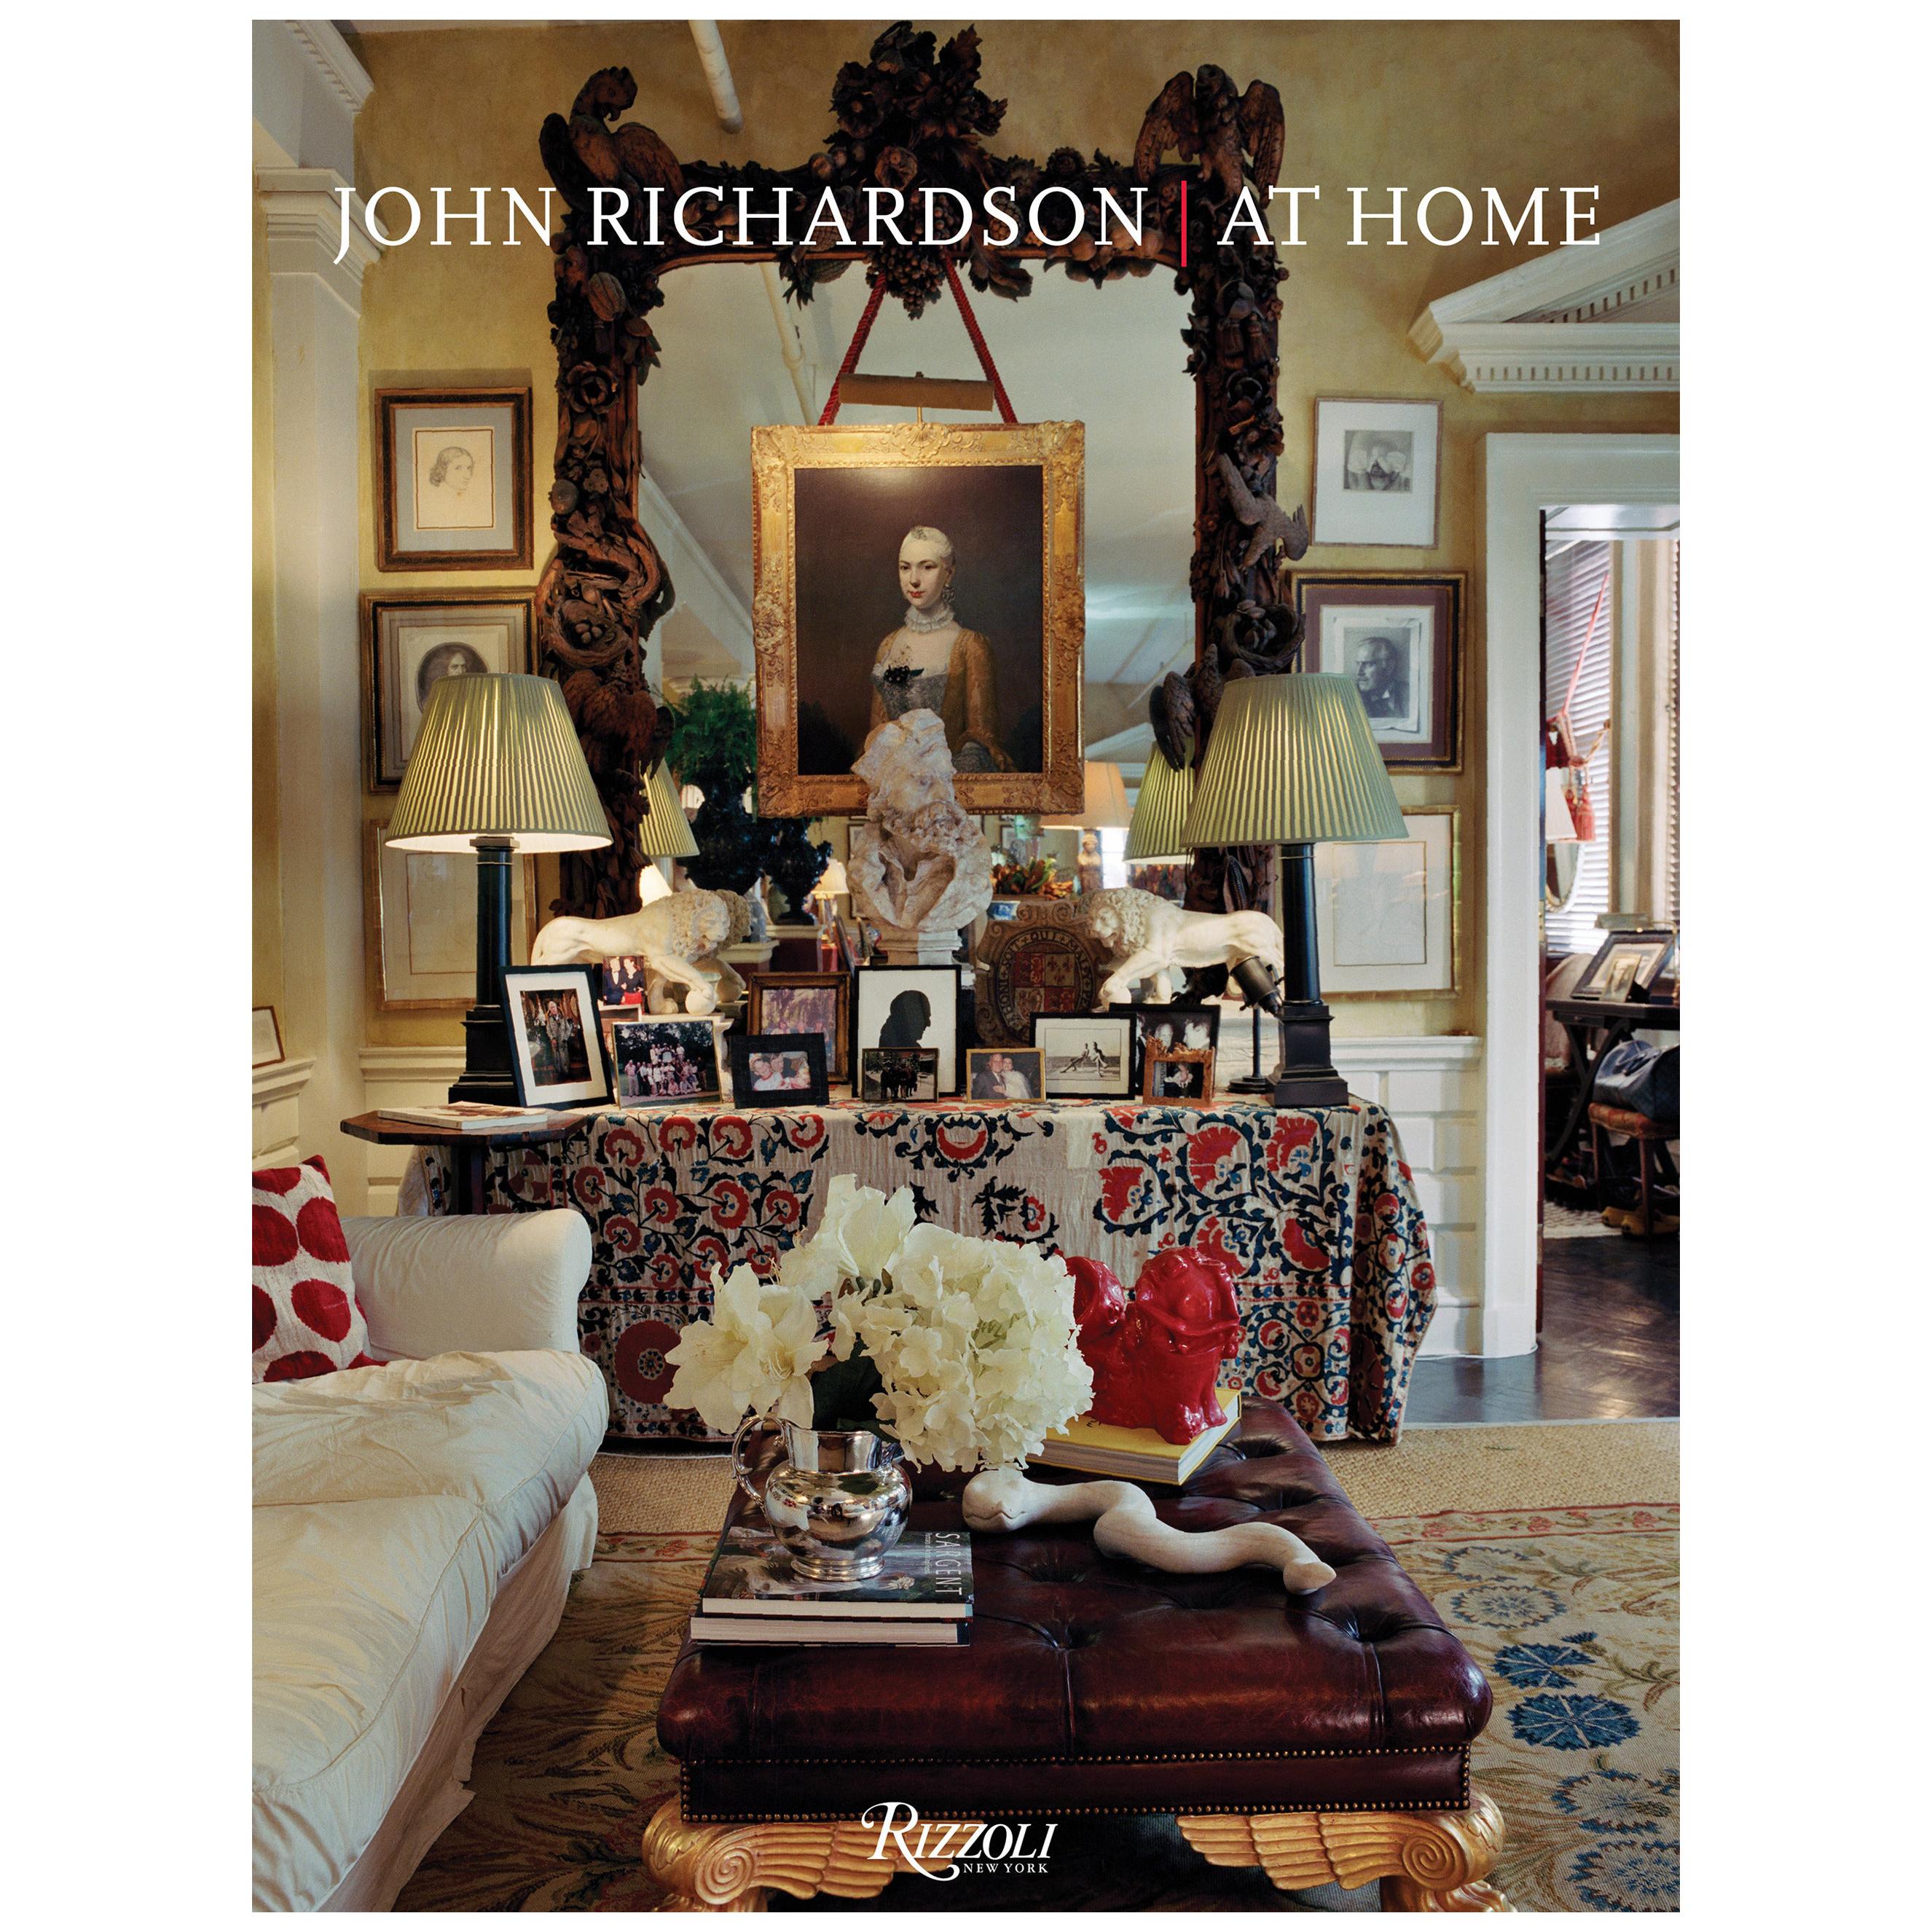 John Richardson at Home